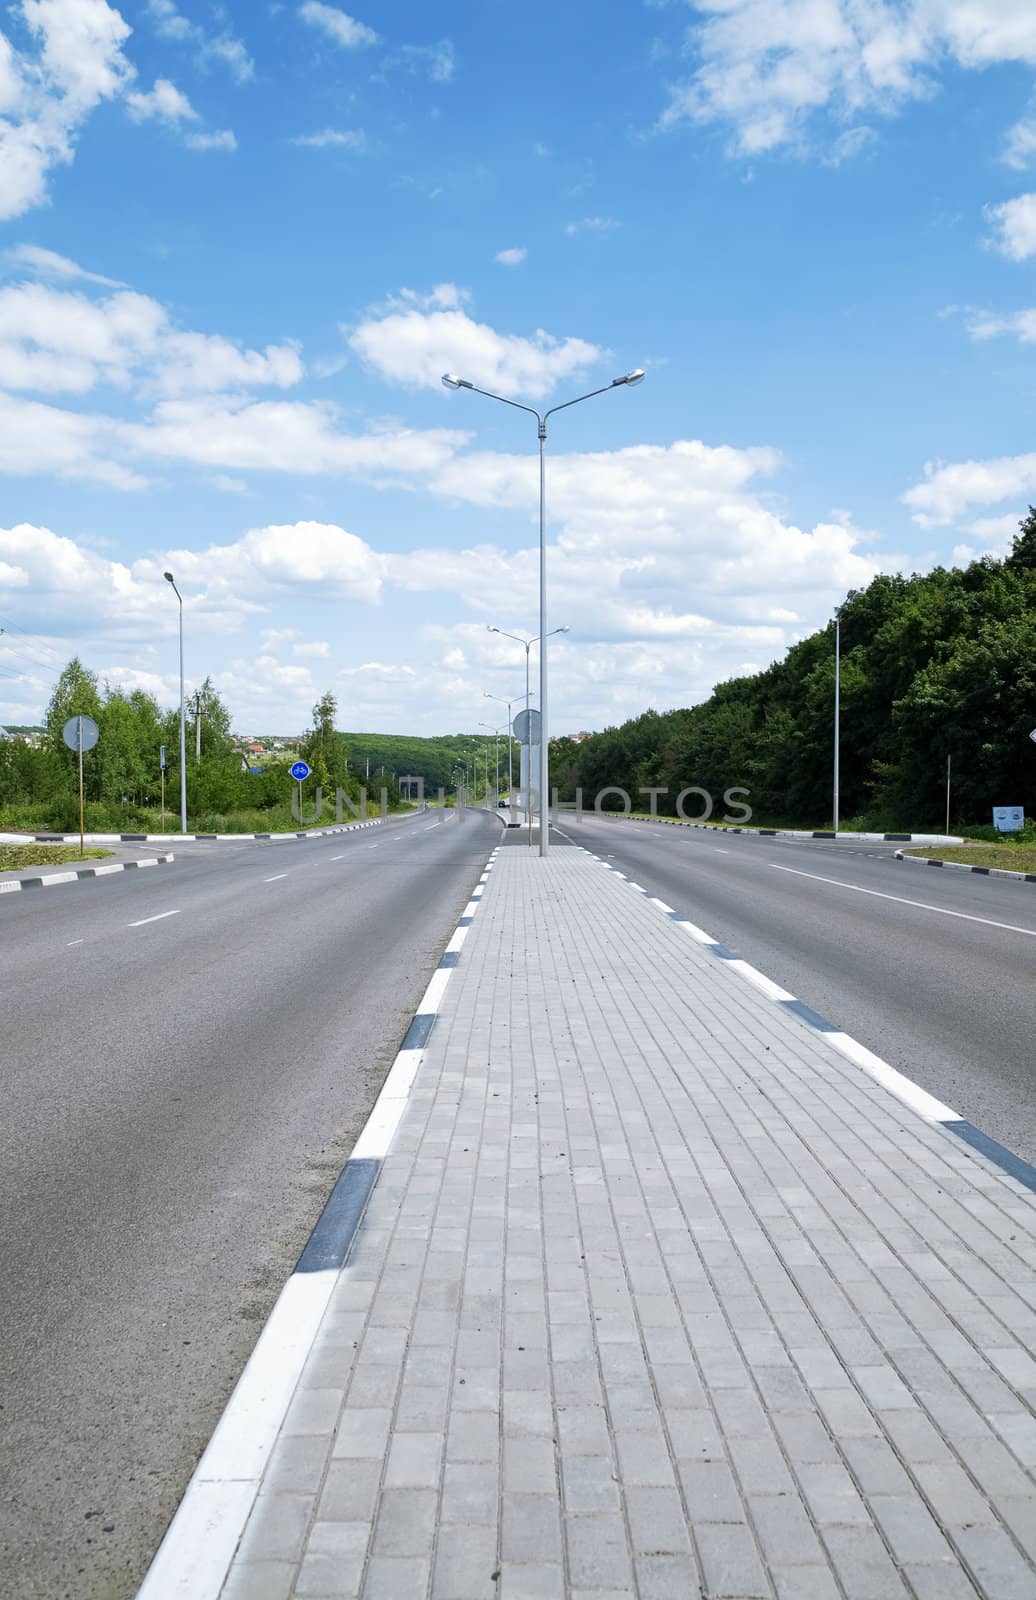 asphalt road with a divider for pedestrians